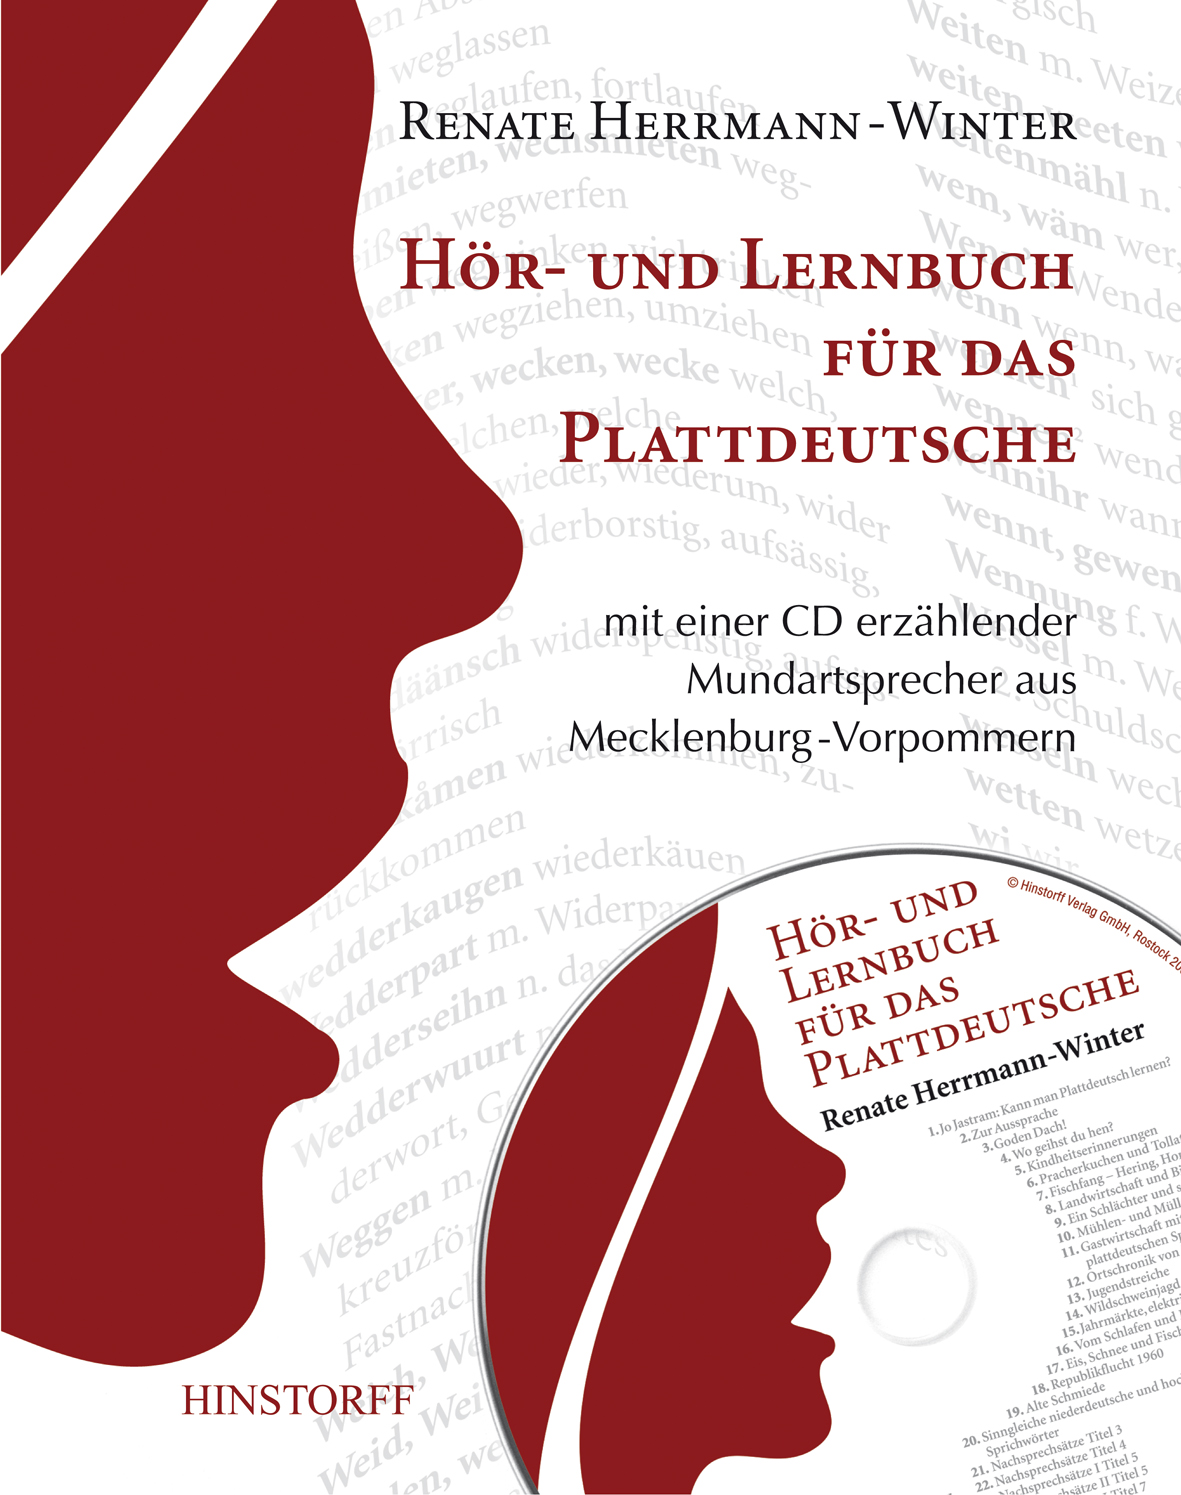 Hör- und Lernbuch für das Plattdeutsche